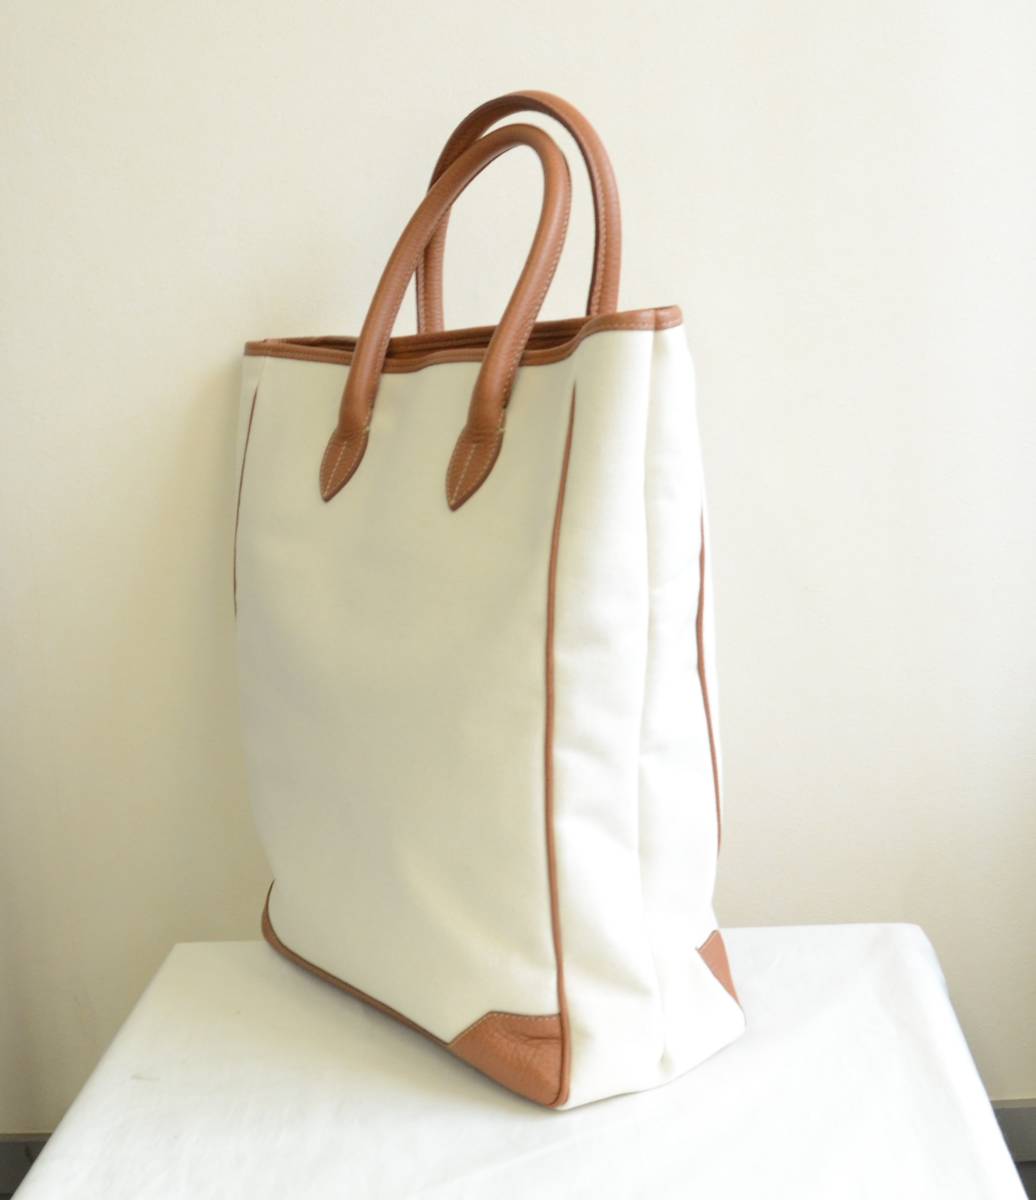  beautiful goods ACATE leather use tote bag largish size 